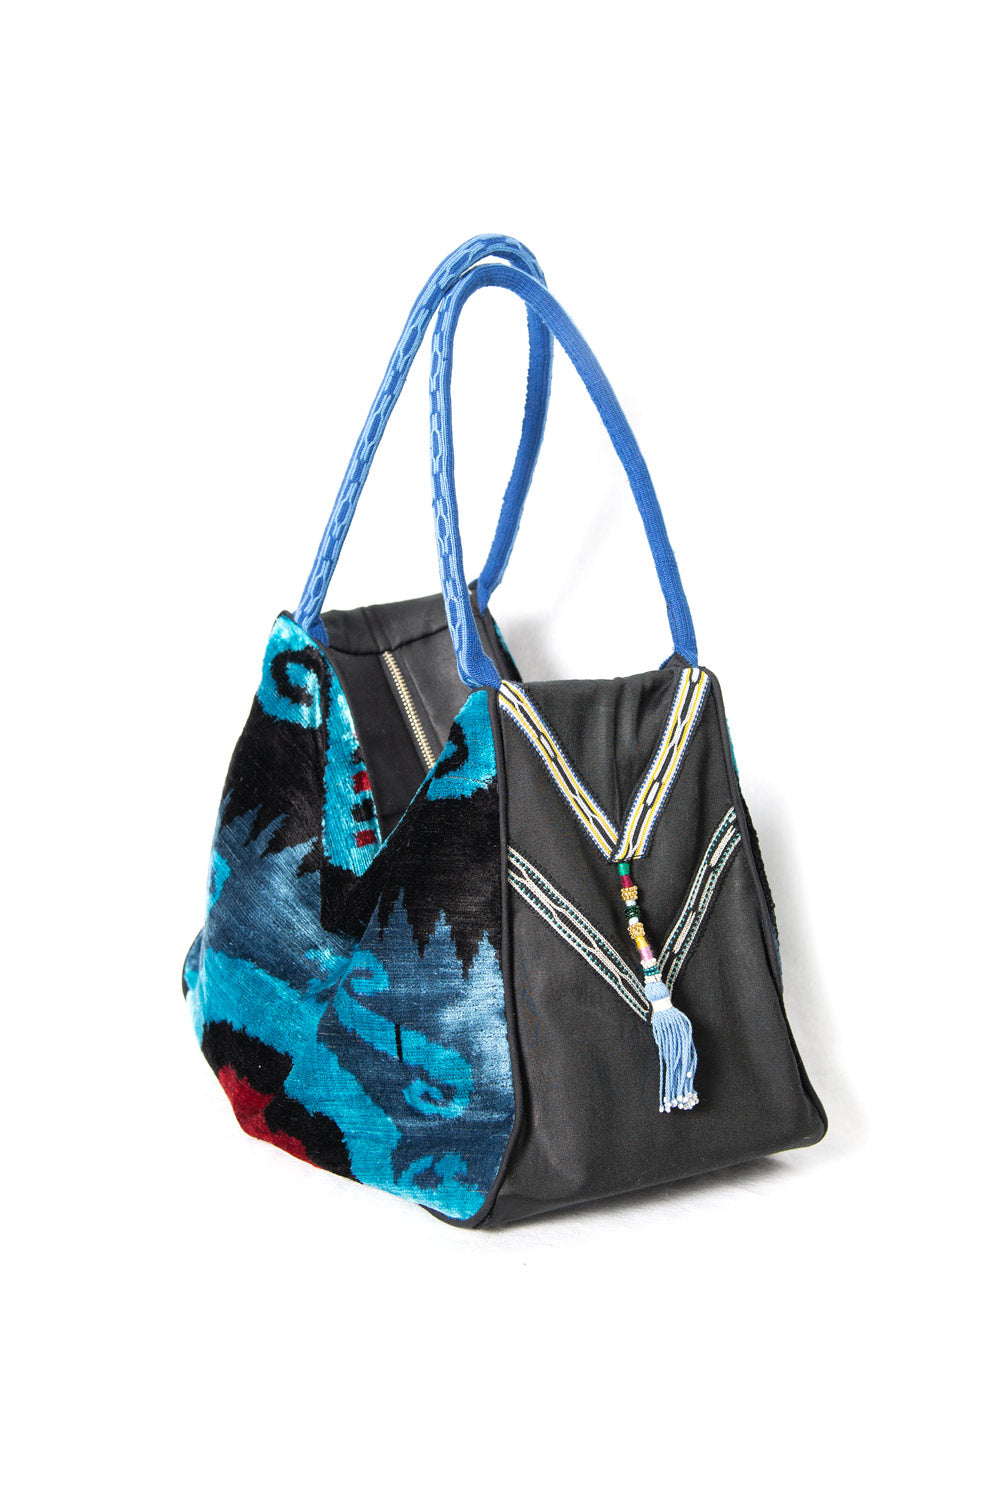 Blue and Black Silk Ikat Velvet Hobo Bag, Image